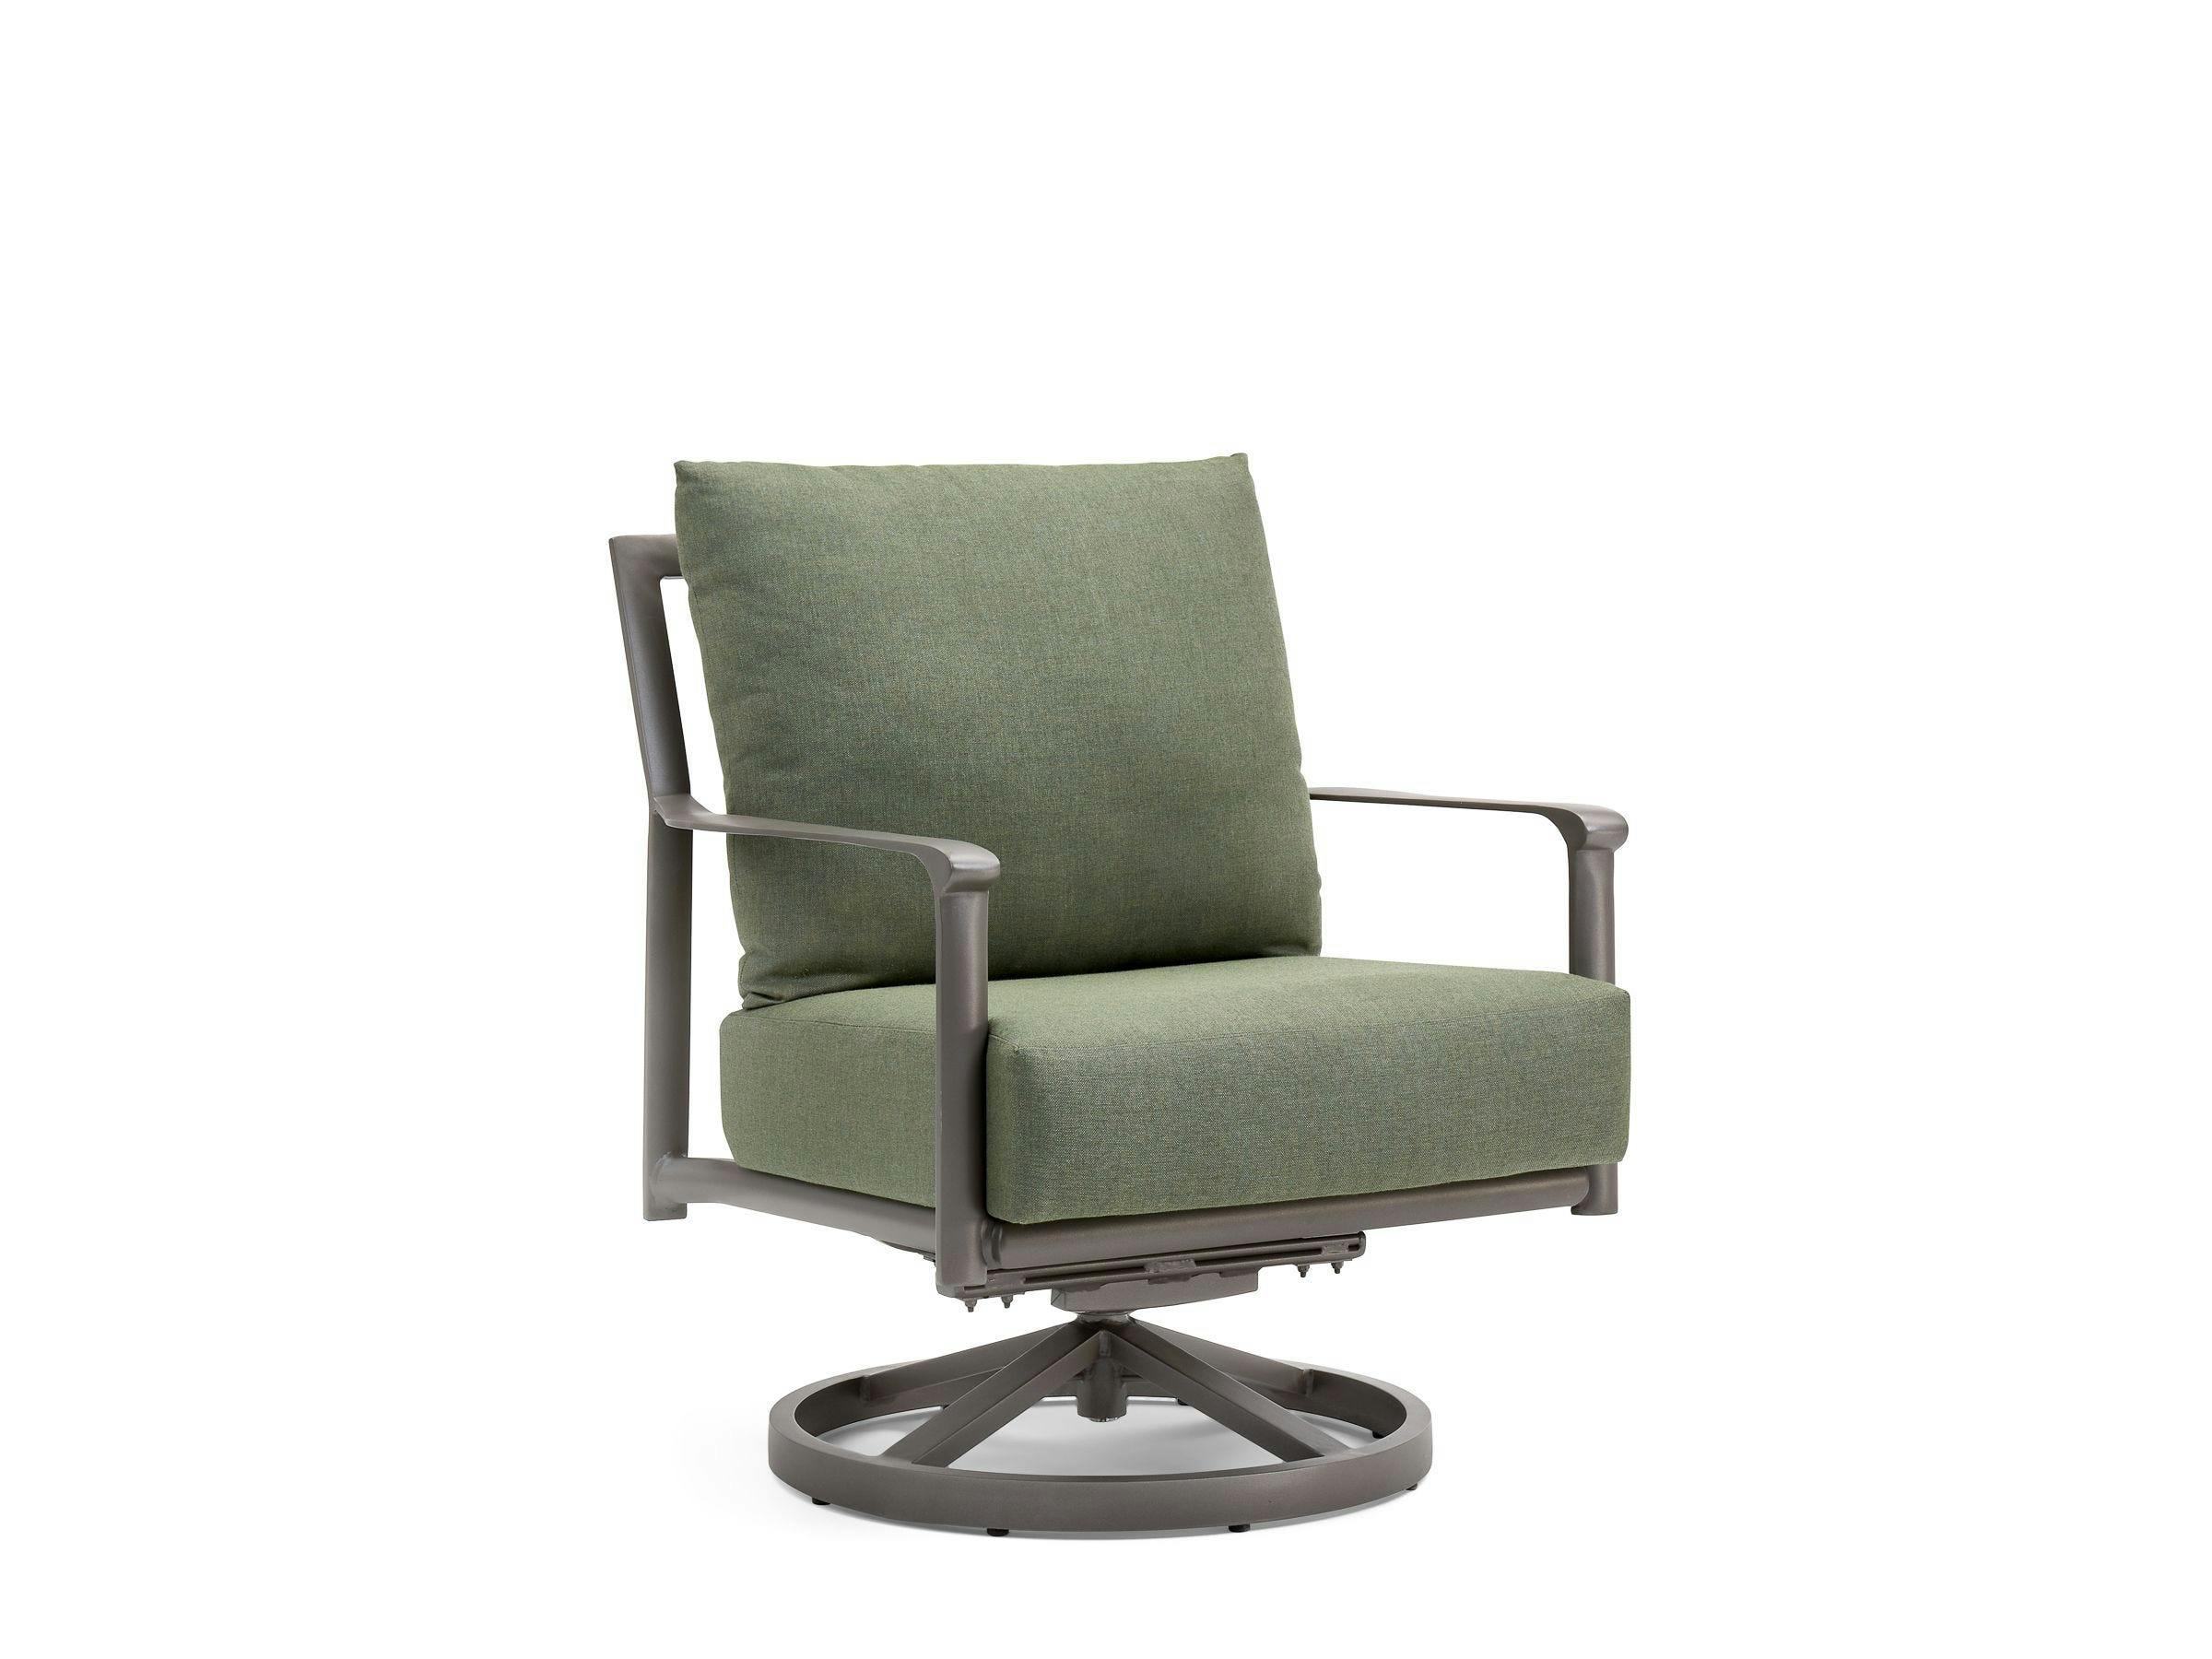 Aspen Cushion Swivel Rocker Lounge Chair